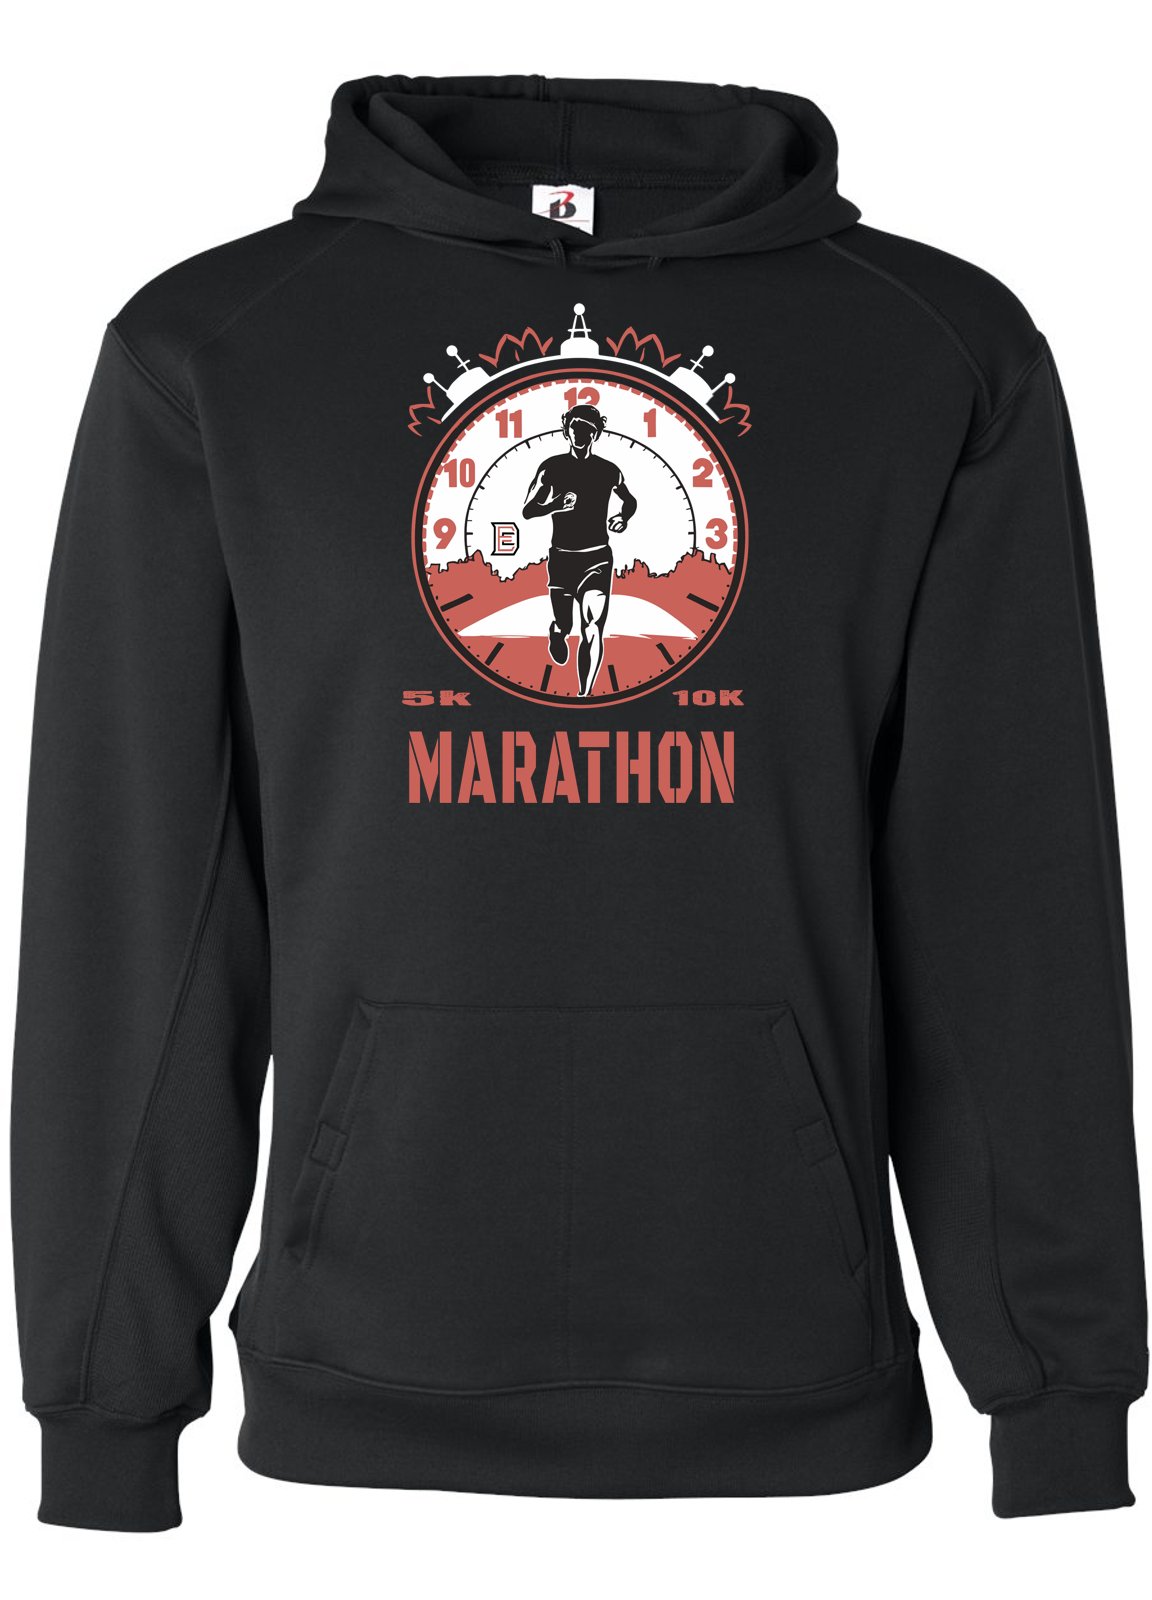 Champion Your Runs: Running 5k, 10k Marathon Hoodie| Limited Edition -